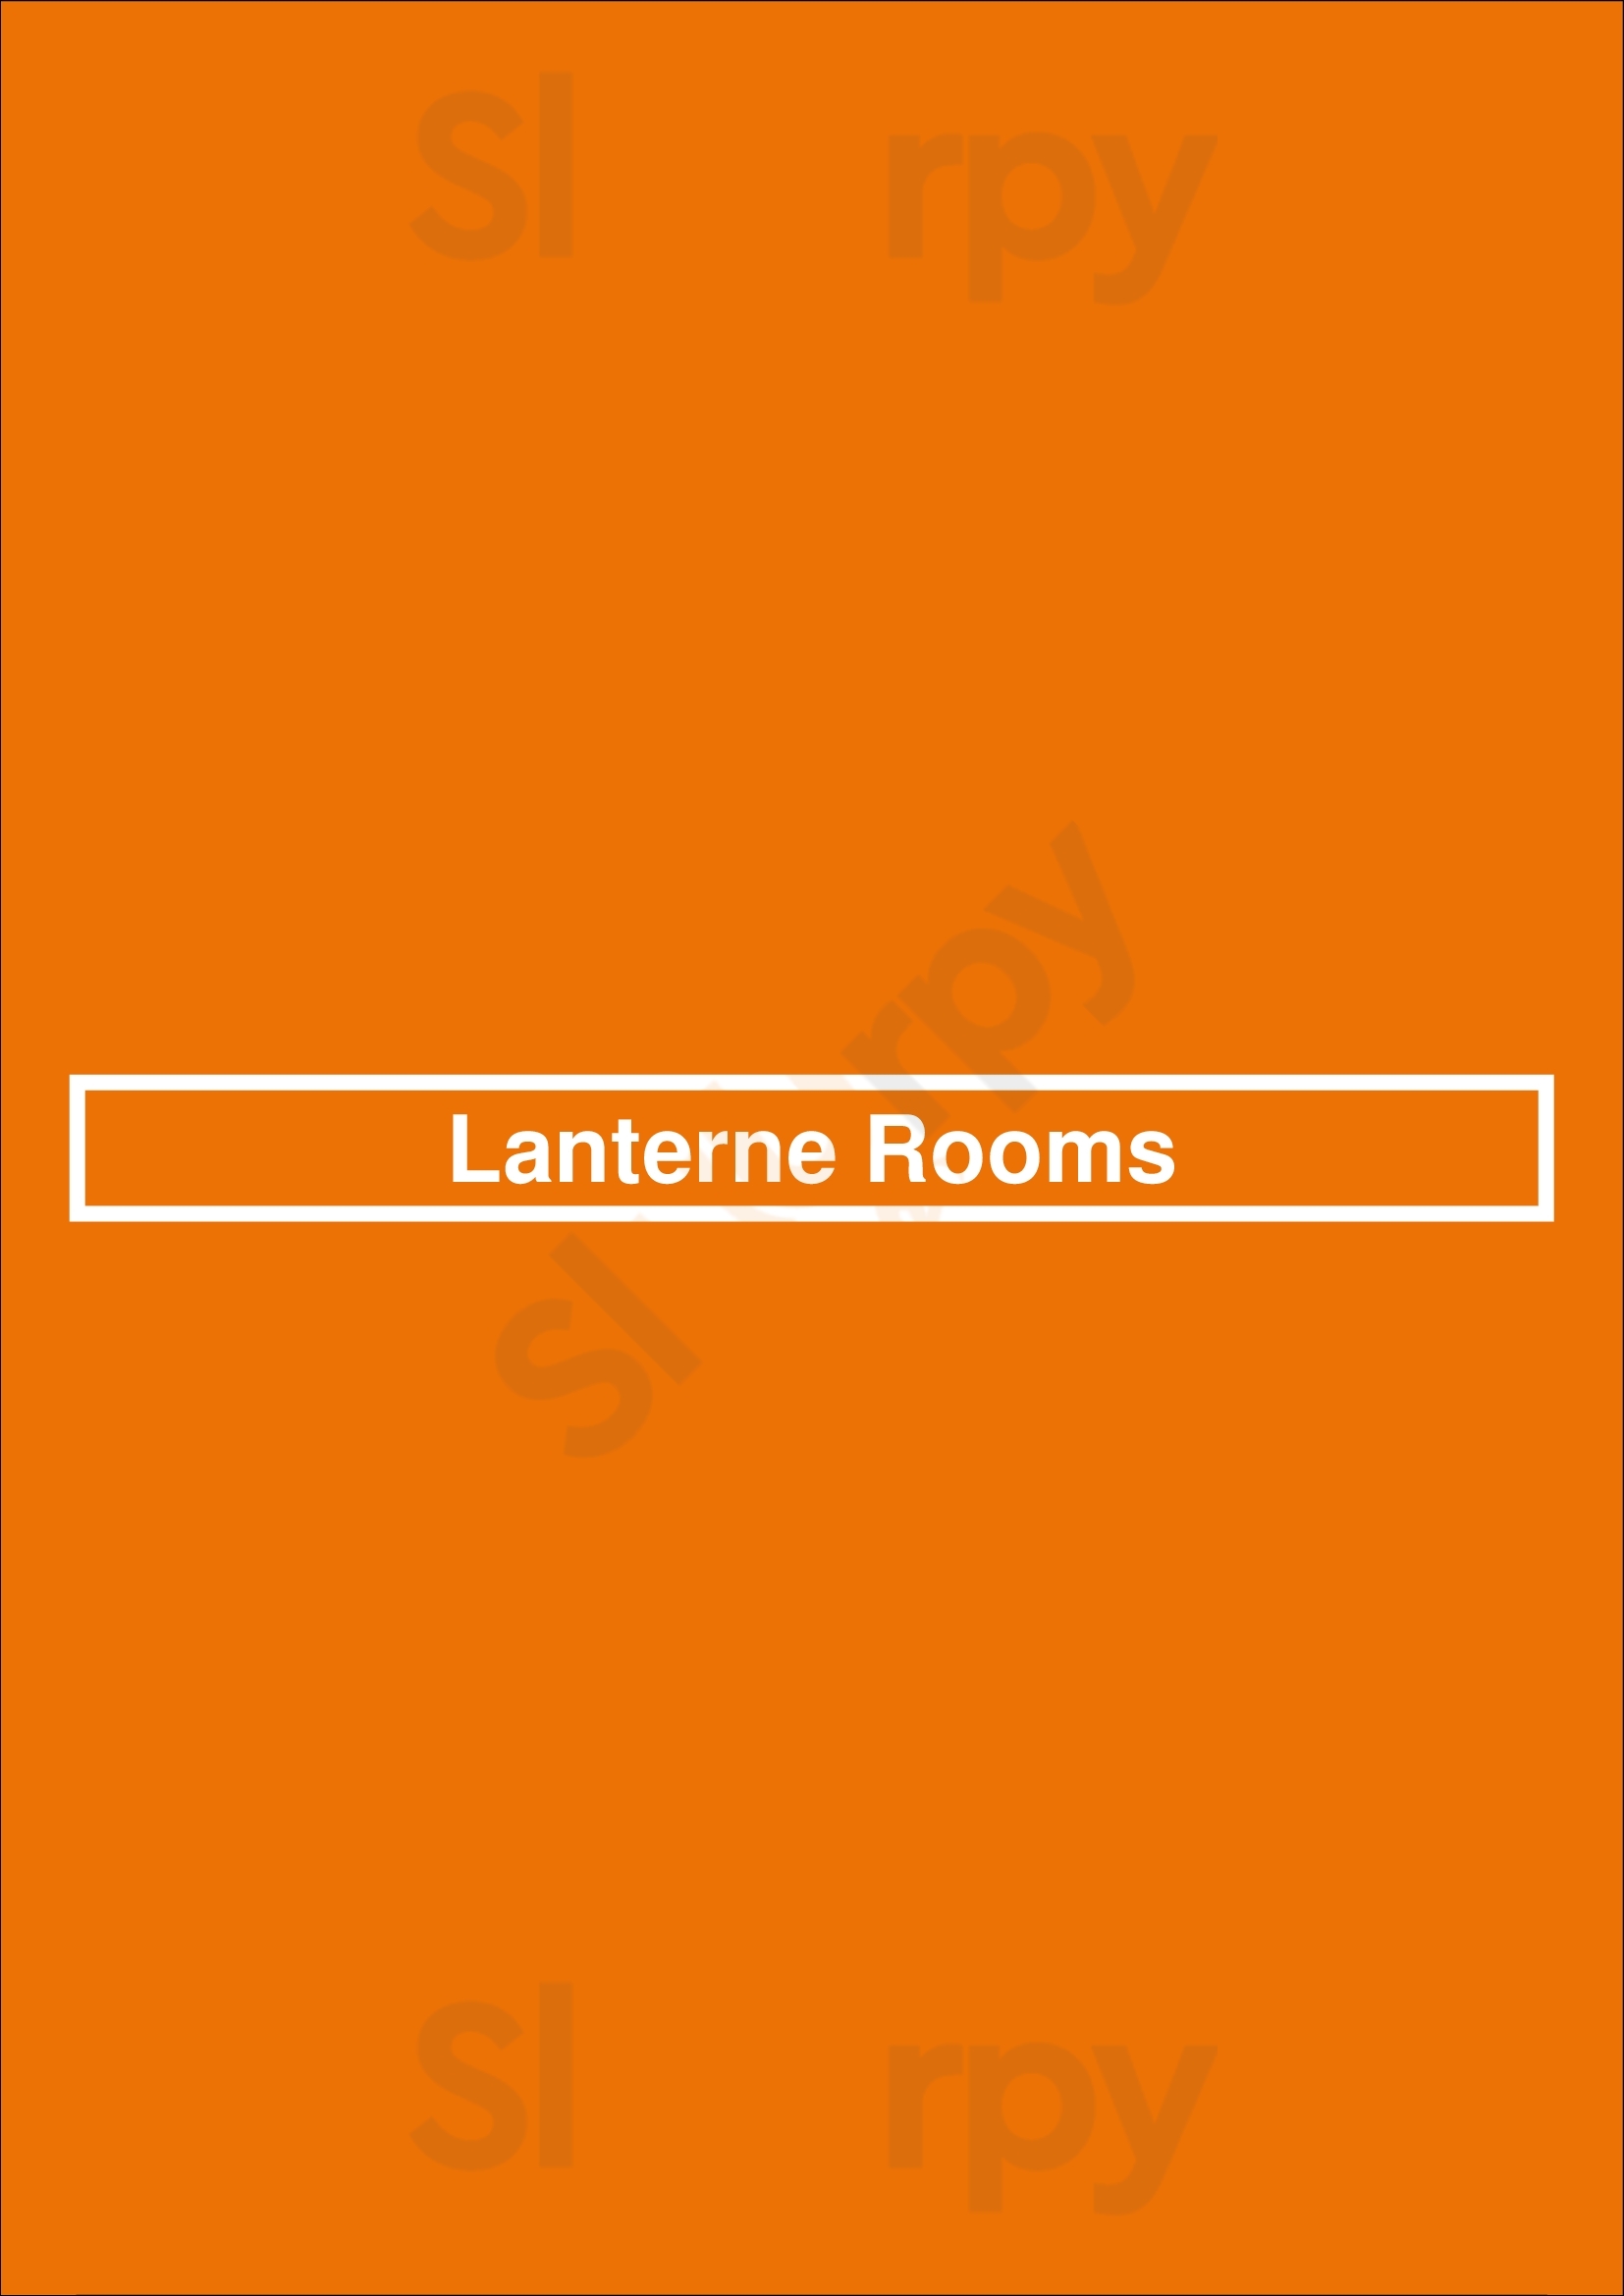 Lanterne Rooms Canberra Menu - 1